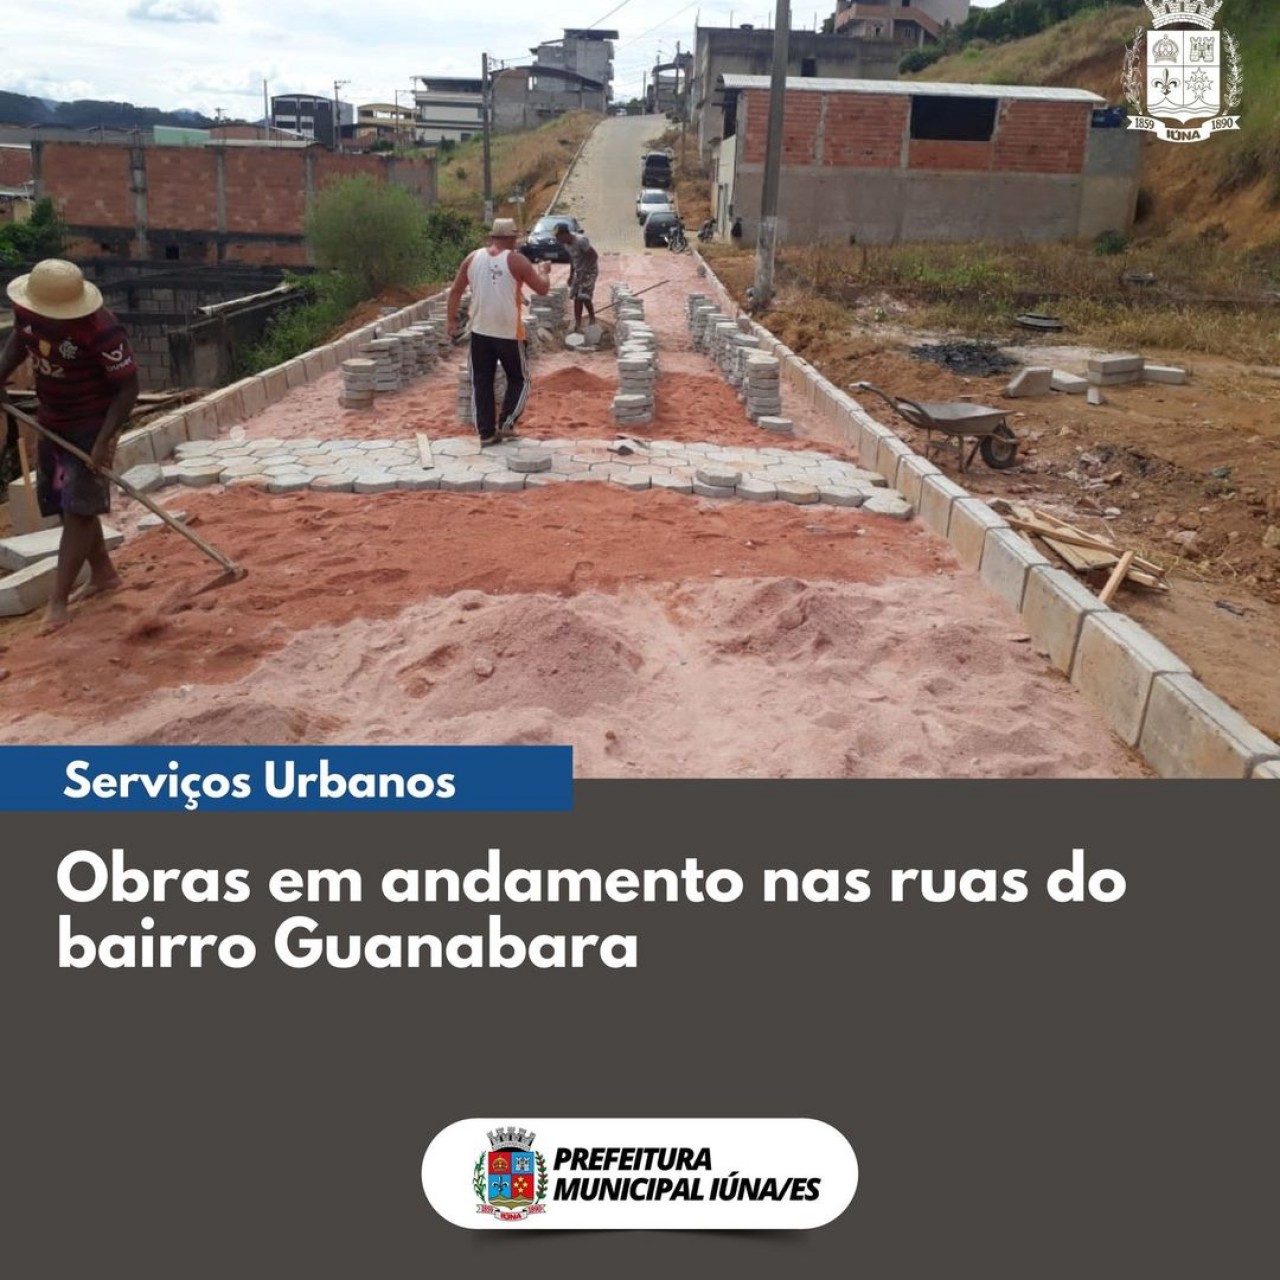 OBRA 91 - obras de rede de esgoto, drenagem e calçamento no bairro Guanabara